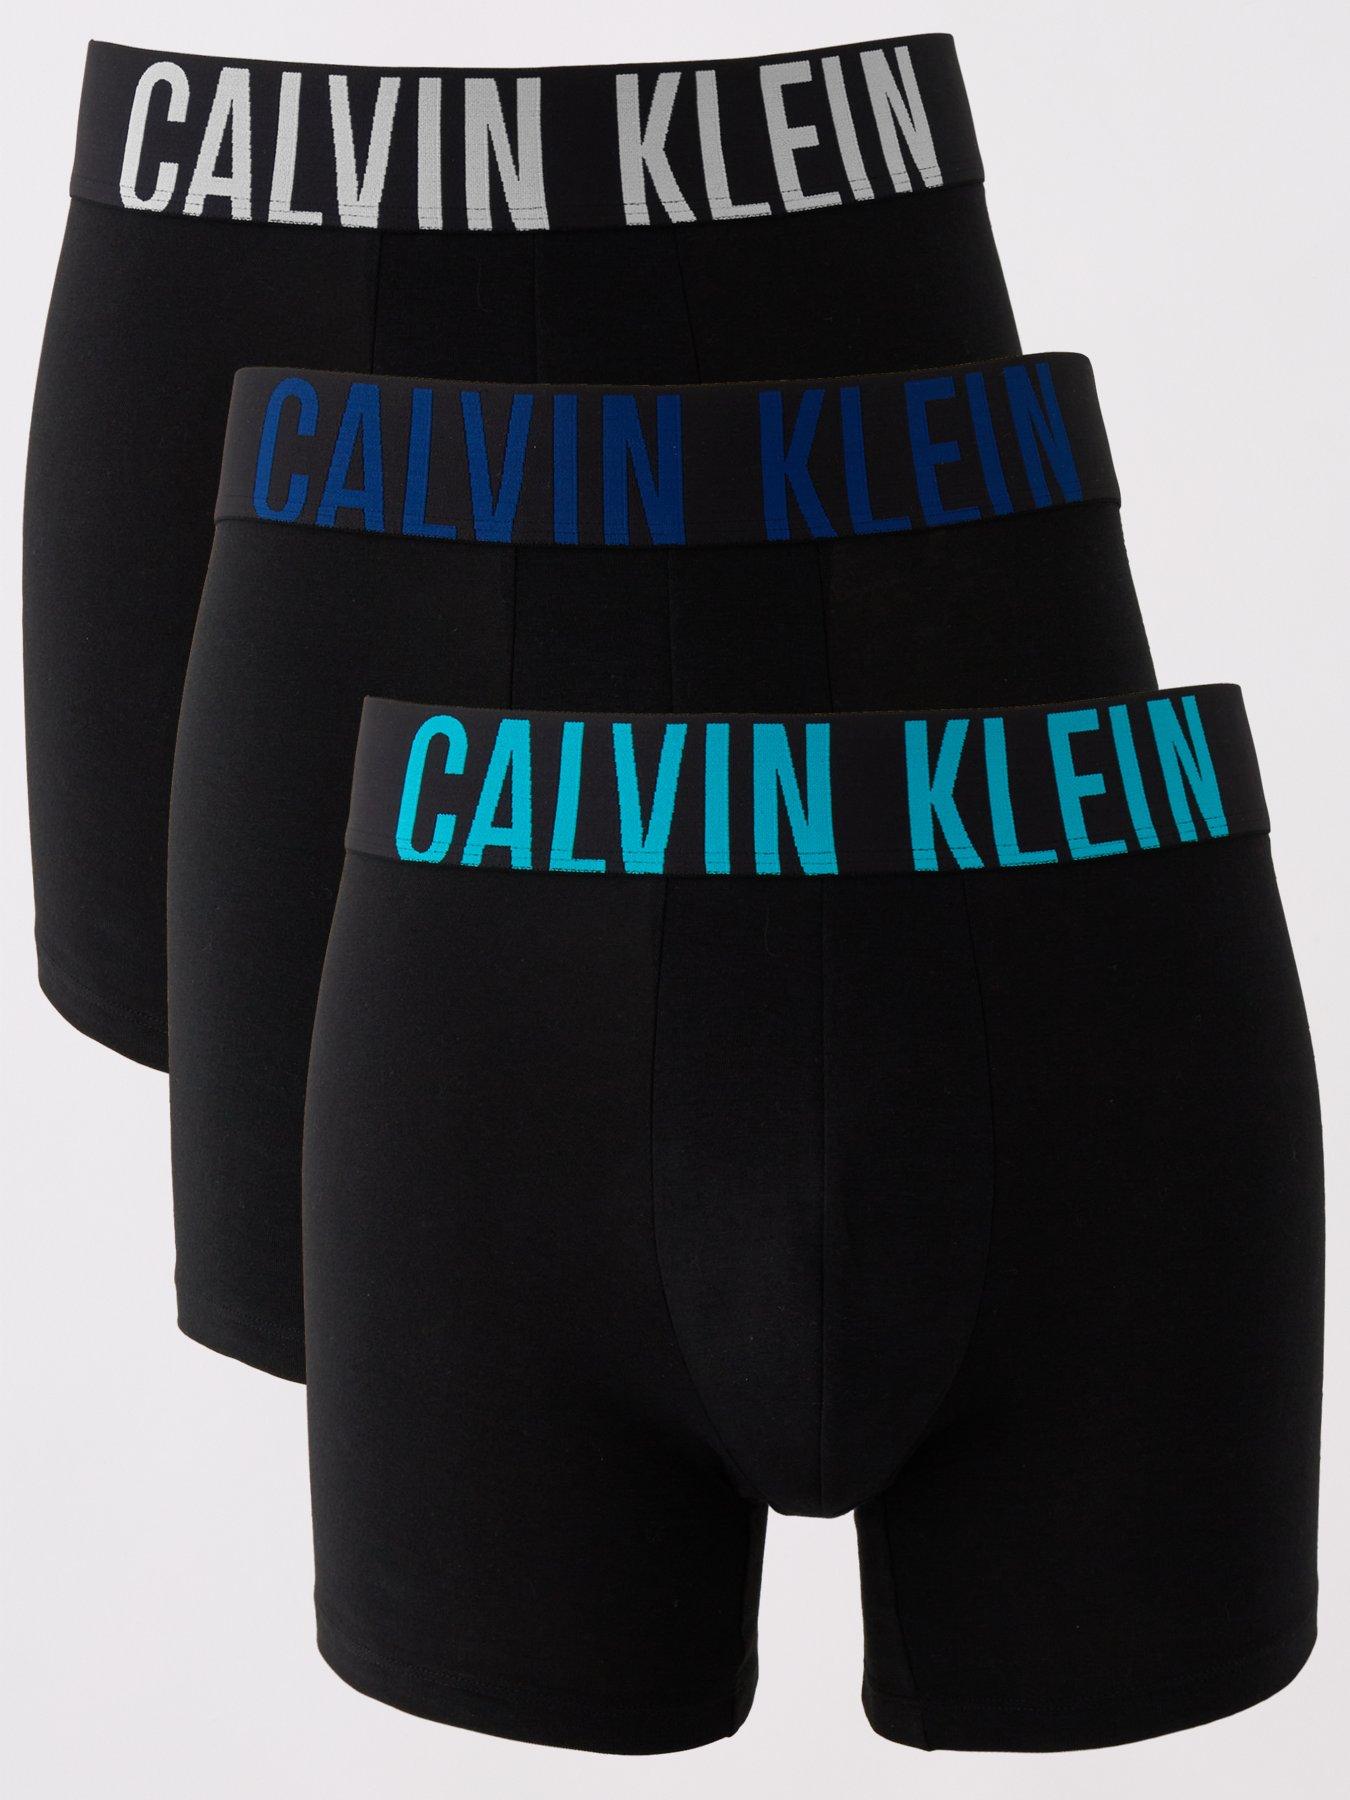 Calvin Klein Calvin Klein 3 Pack Boxer Brief, Black, Size L, Men